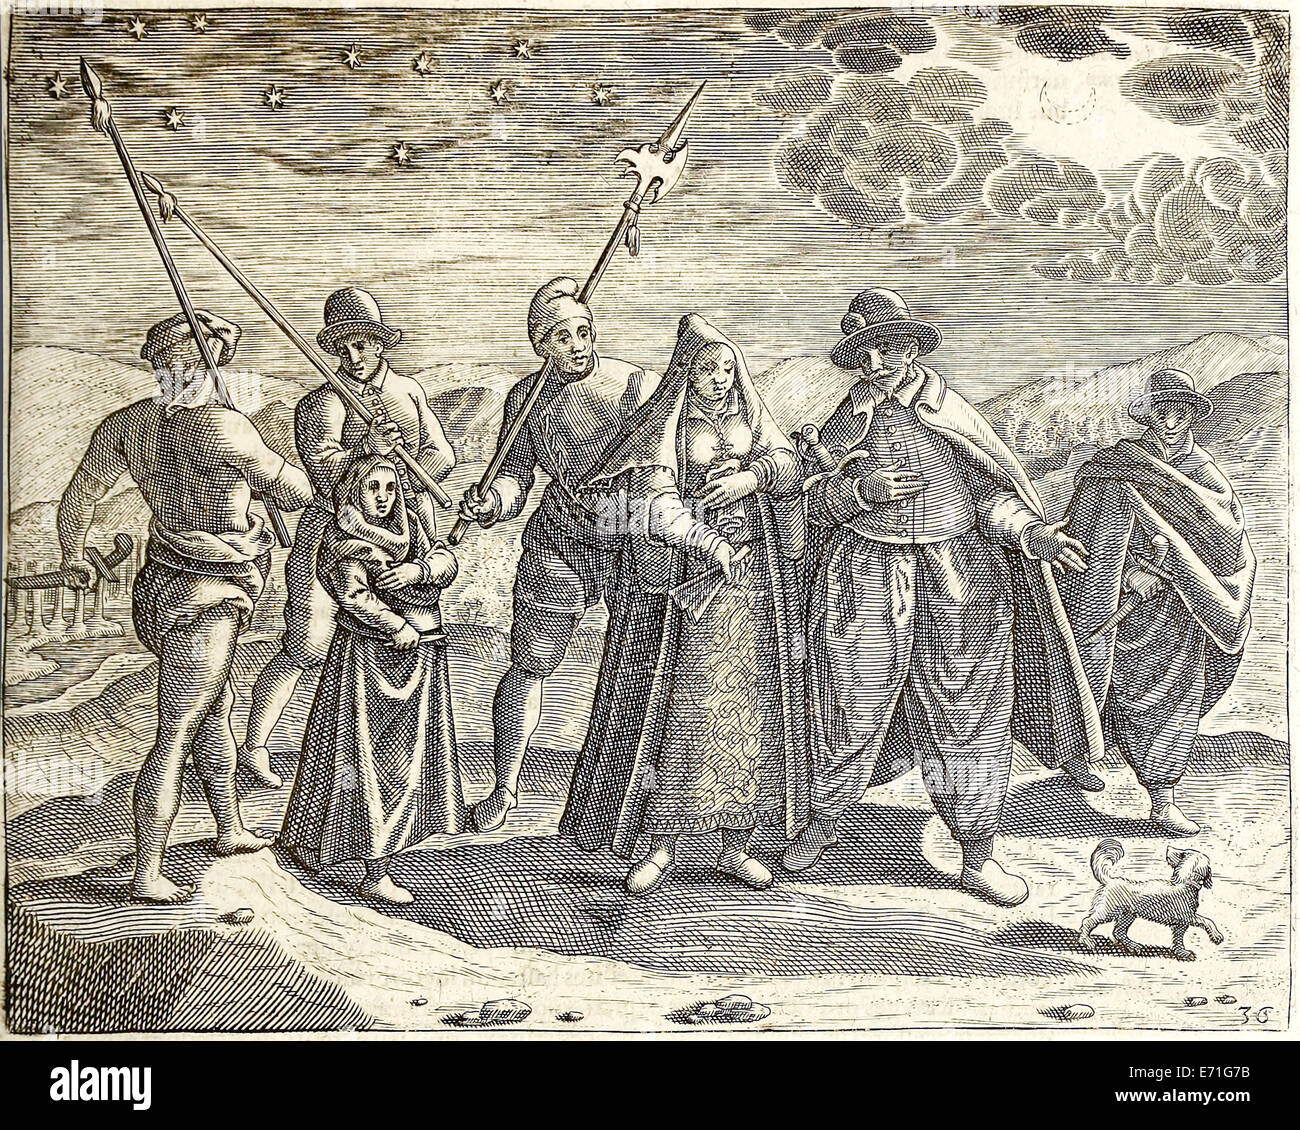 Portugiesisch, Illustration aus "Indiae Orientalis' 1599 von Theodor de Bry. Siehe Beschreibung für weitere Informationen. Stockfoto